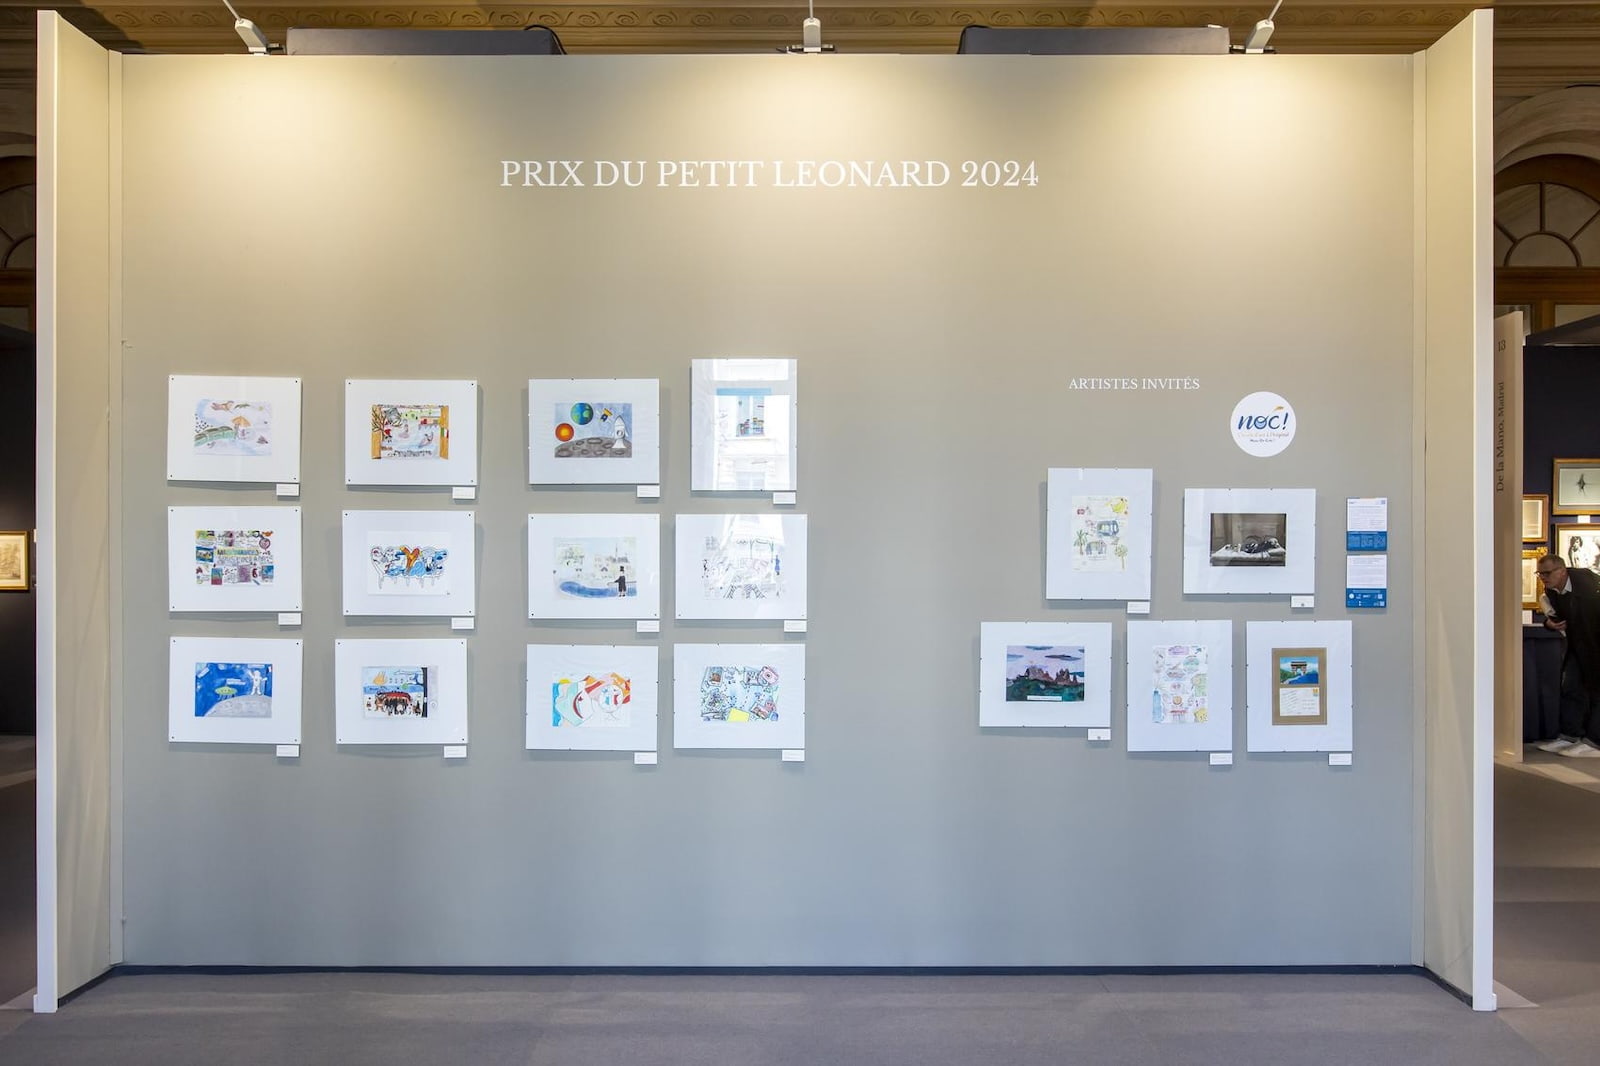 Les dessins du Prix du Petit Léonard 2024 et des artistes invités par NOC